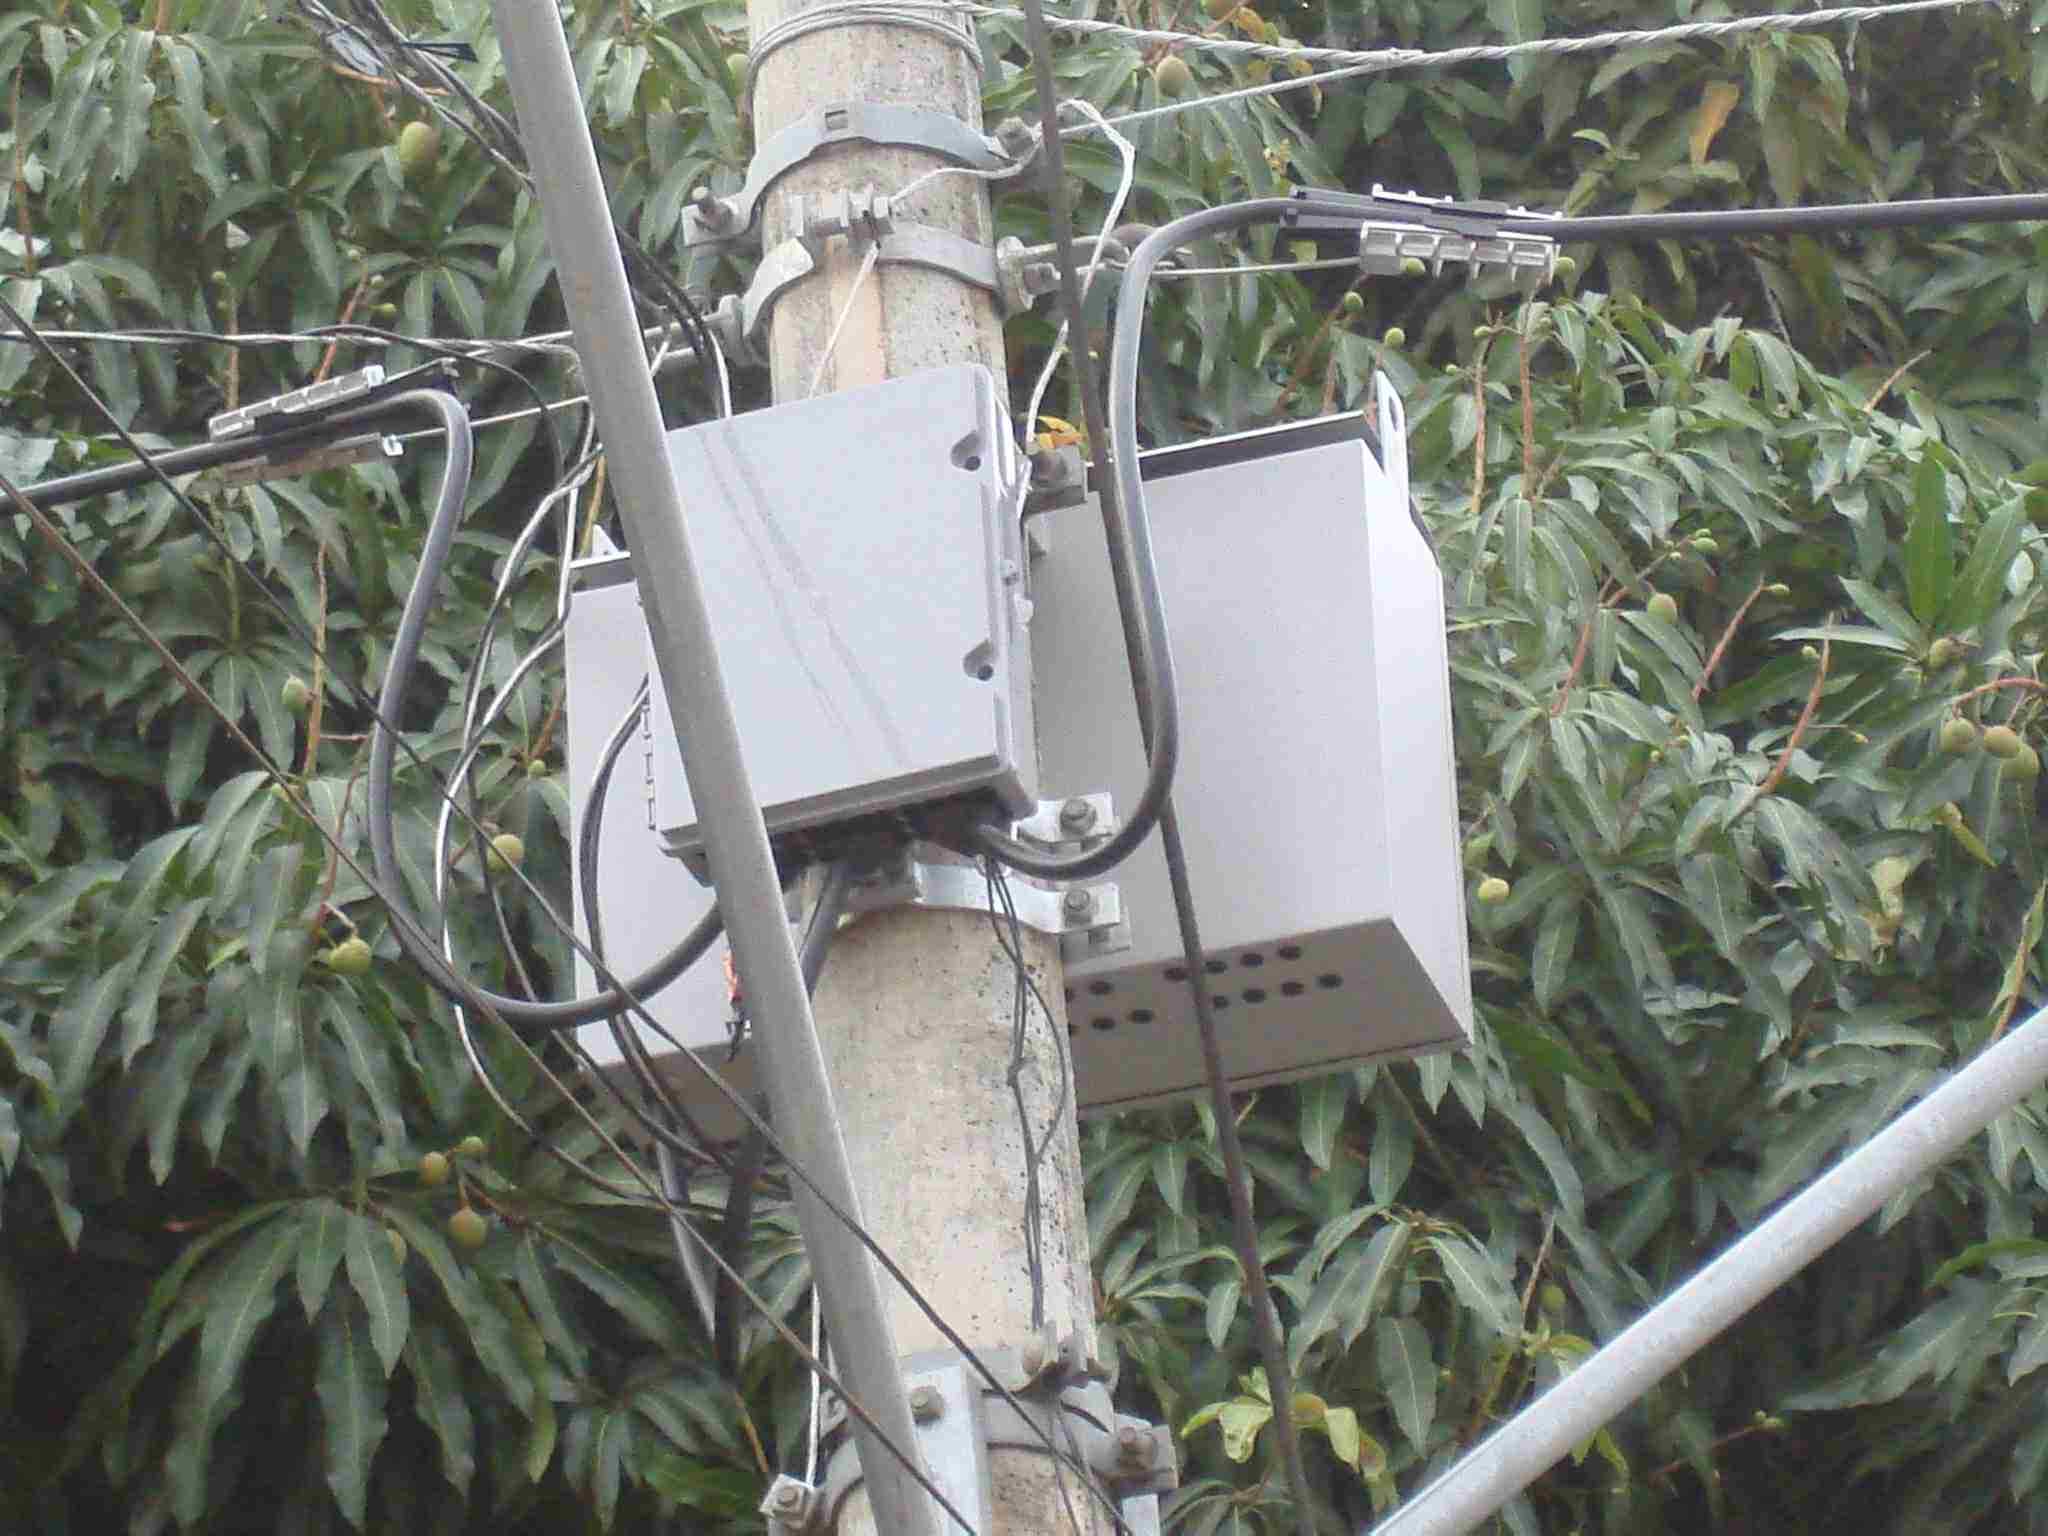 A seguir pode ser observado um poste equipado com a RDC completa. As conexões da rede são feitas dentro das caixas. O ramal das ligações dos clientes segue para os padrões dos consumidores, já medido.